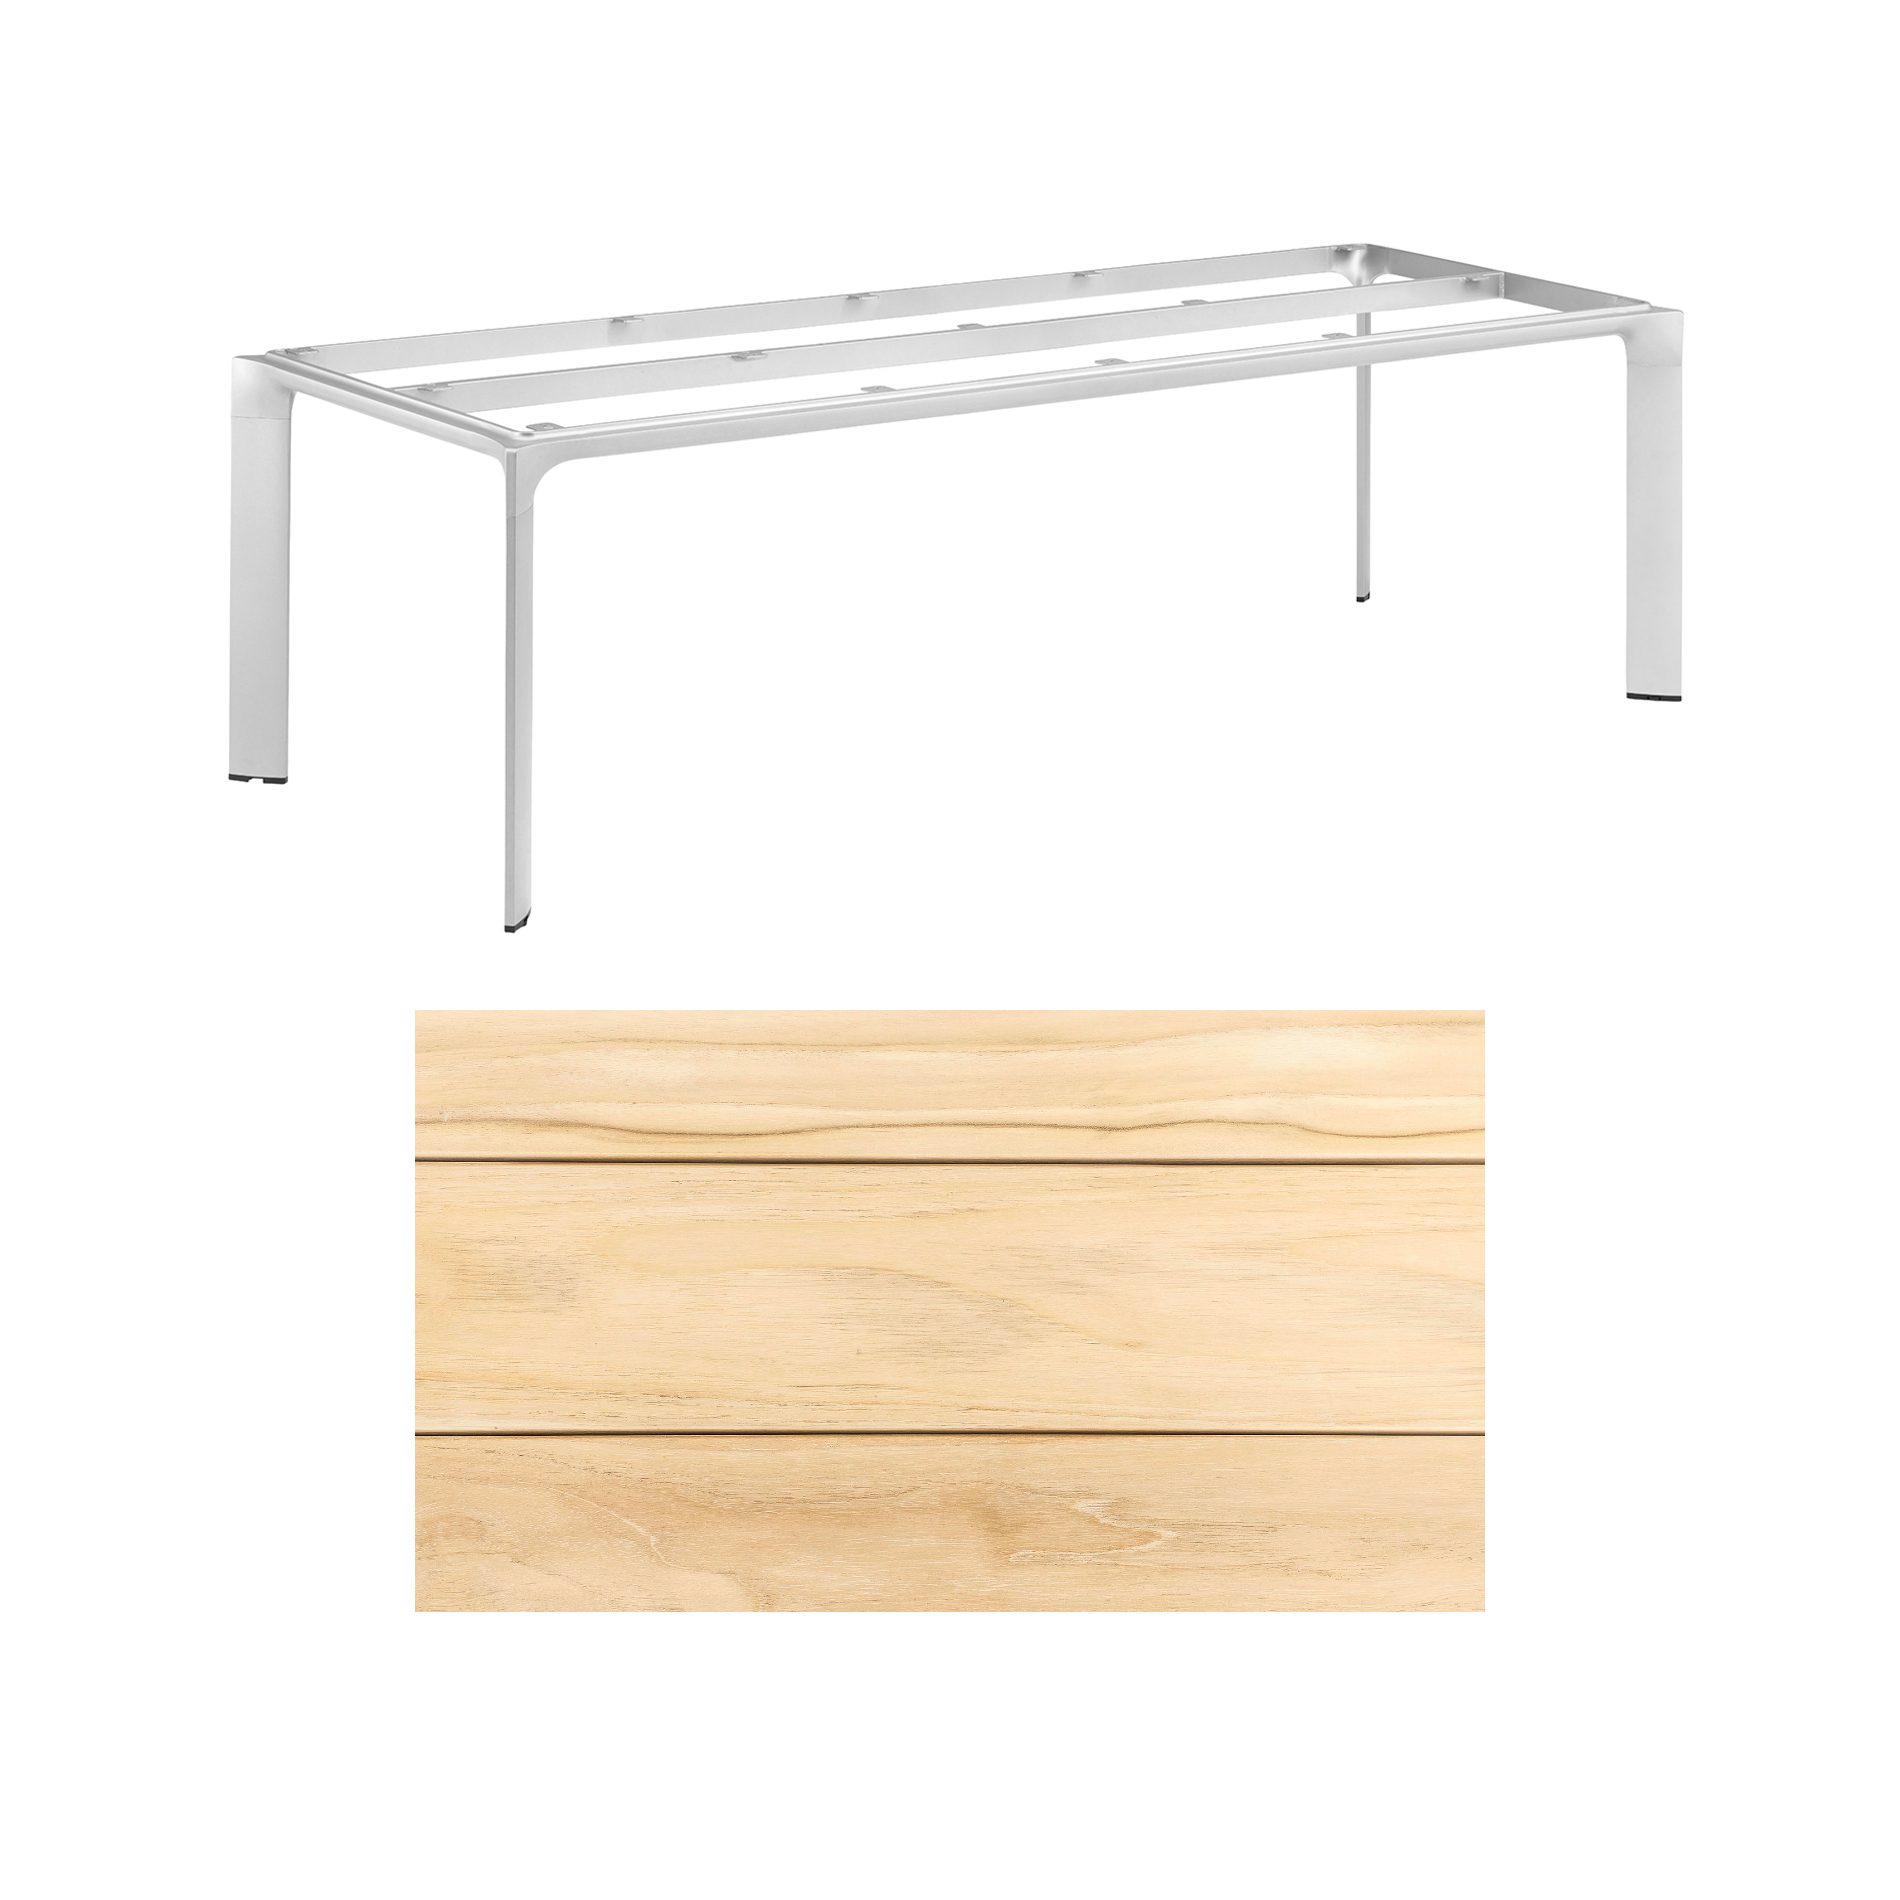 Kettler "Diamond" Tischsystem Gartentisch, Tischgestell Aluminium silber, Tischplatte Teakholz breite Leisten, 220x95 cm